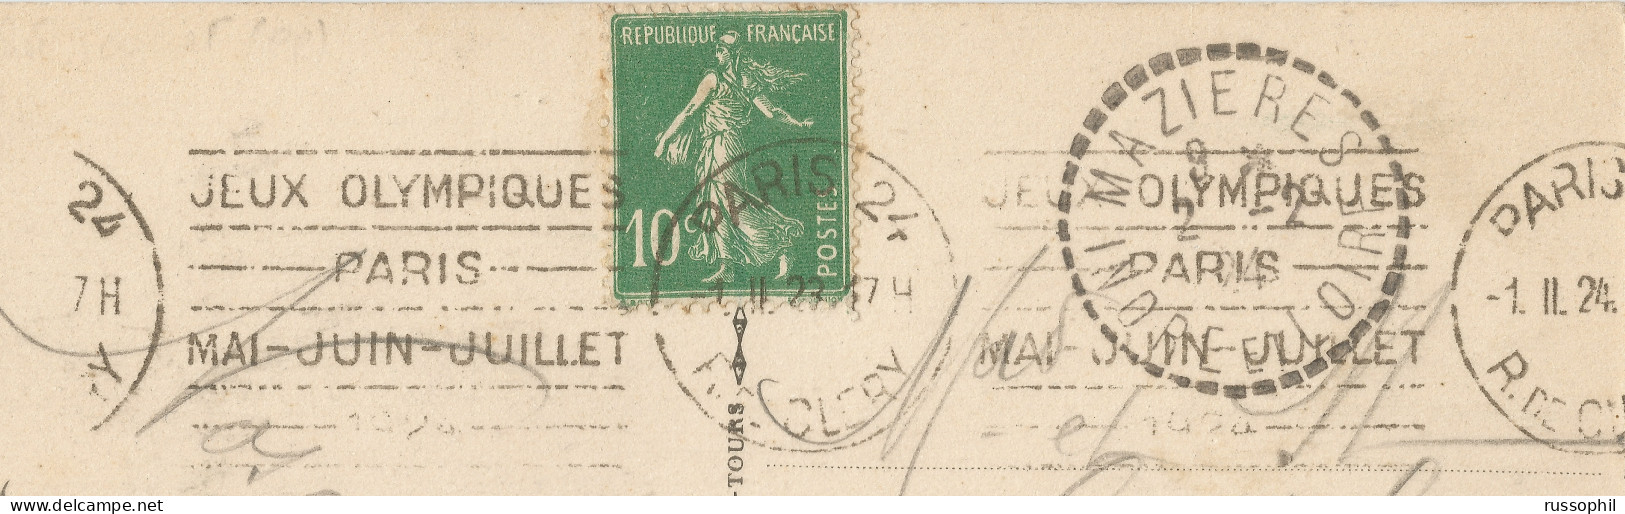 FRANCE - KRAG DEPARTURE PMK "PARIS 24 JEUX OLYMPIQUES" ON FRANKED PC (VIEW OF PARIS) TO MAZIERES (37) - 1924 - Verano 1924: Paris